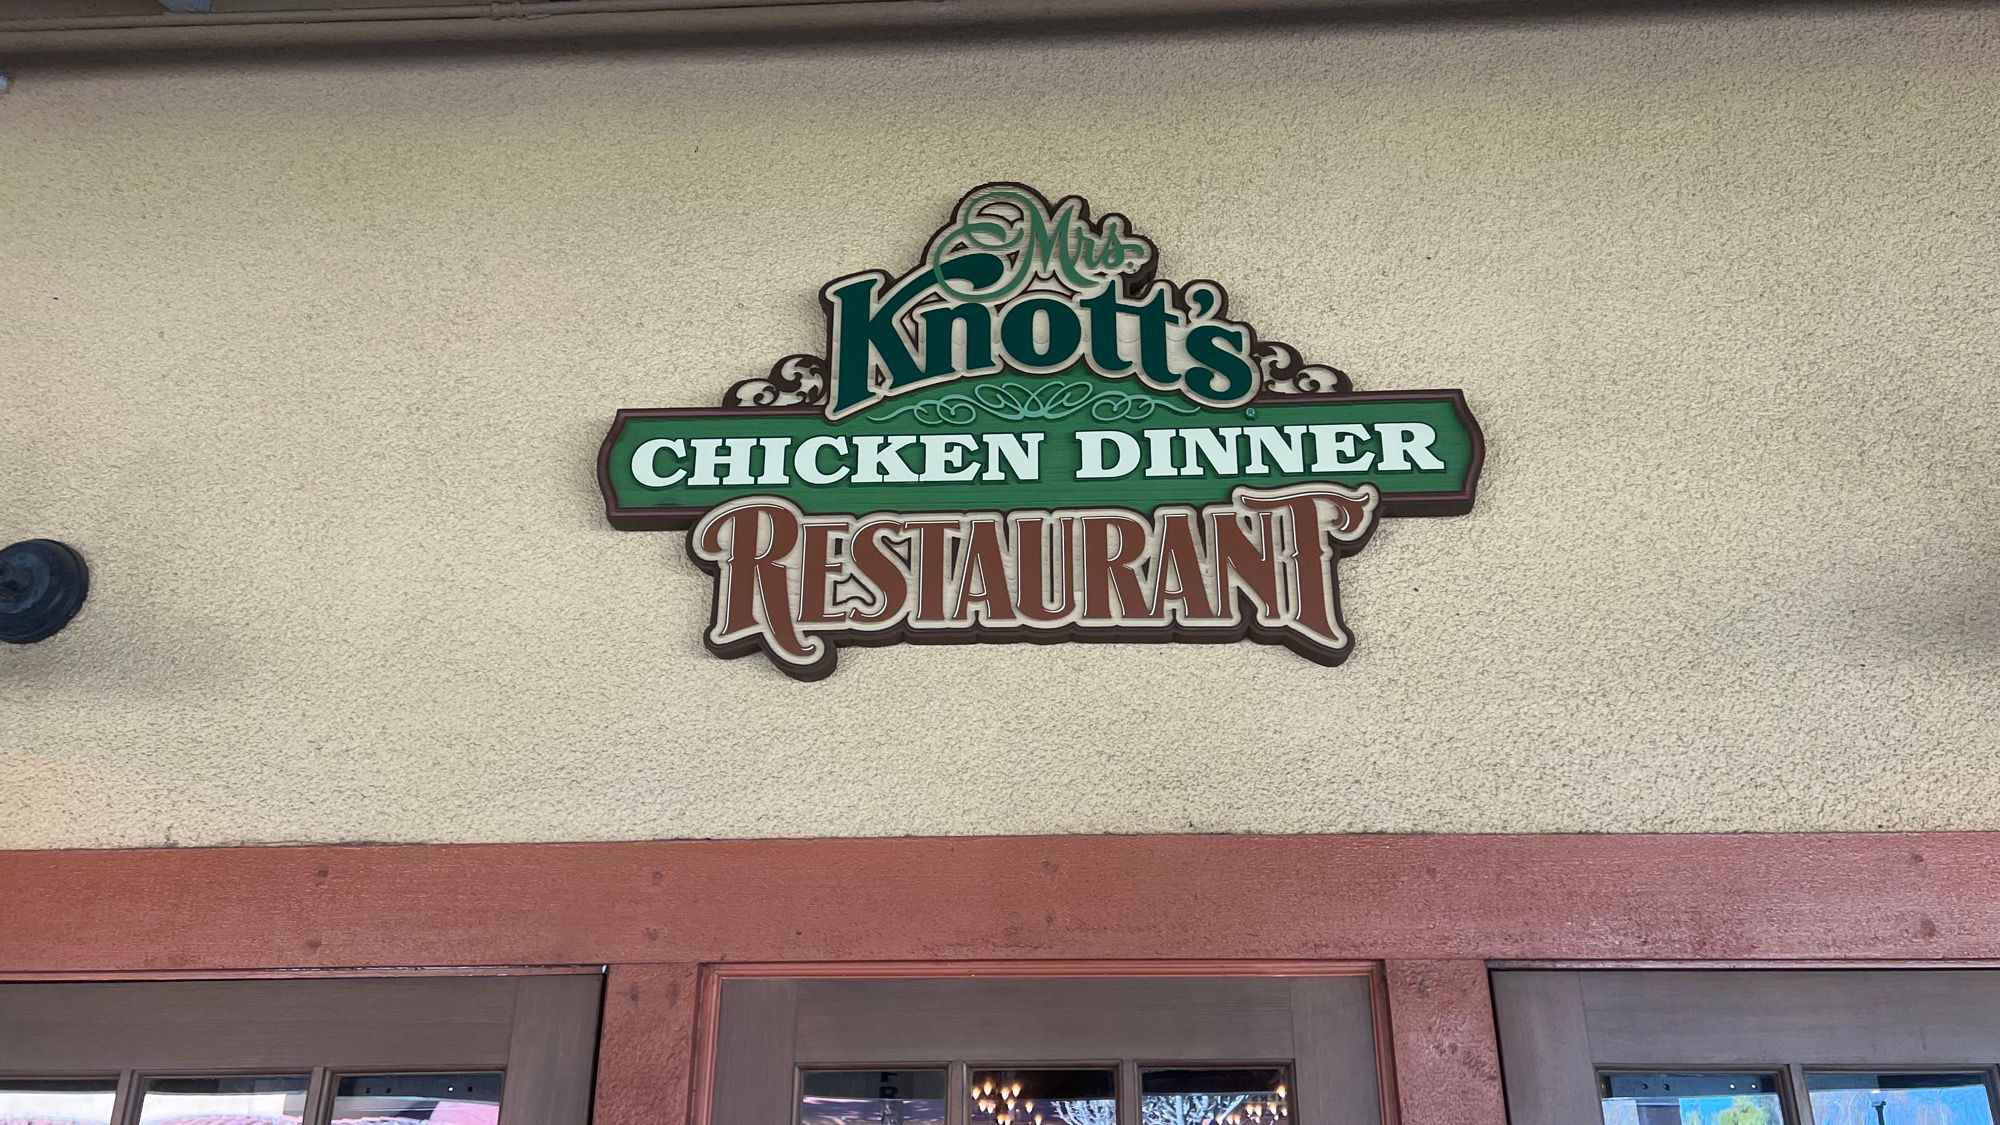 Mrs. Knott's Chicken Dinner Restaurant Sign